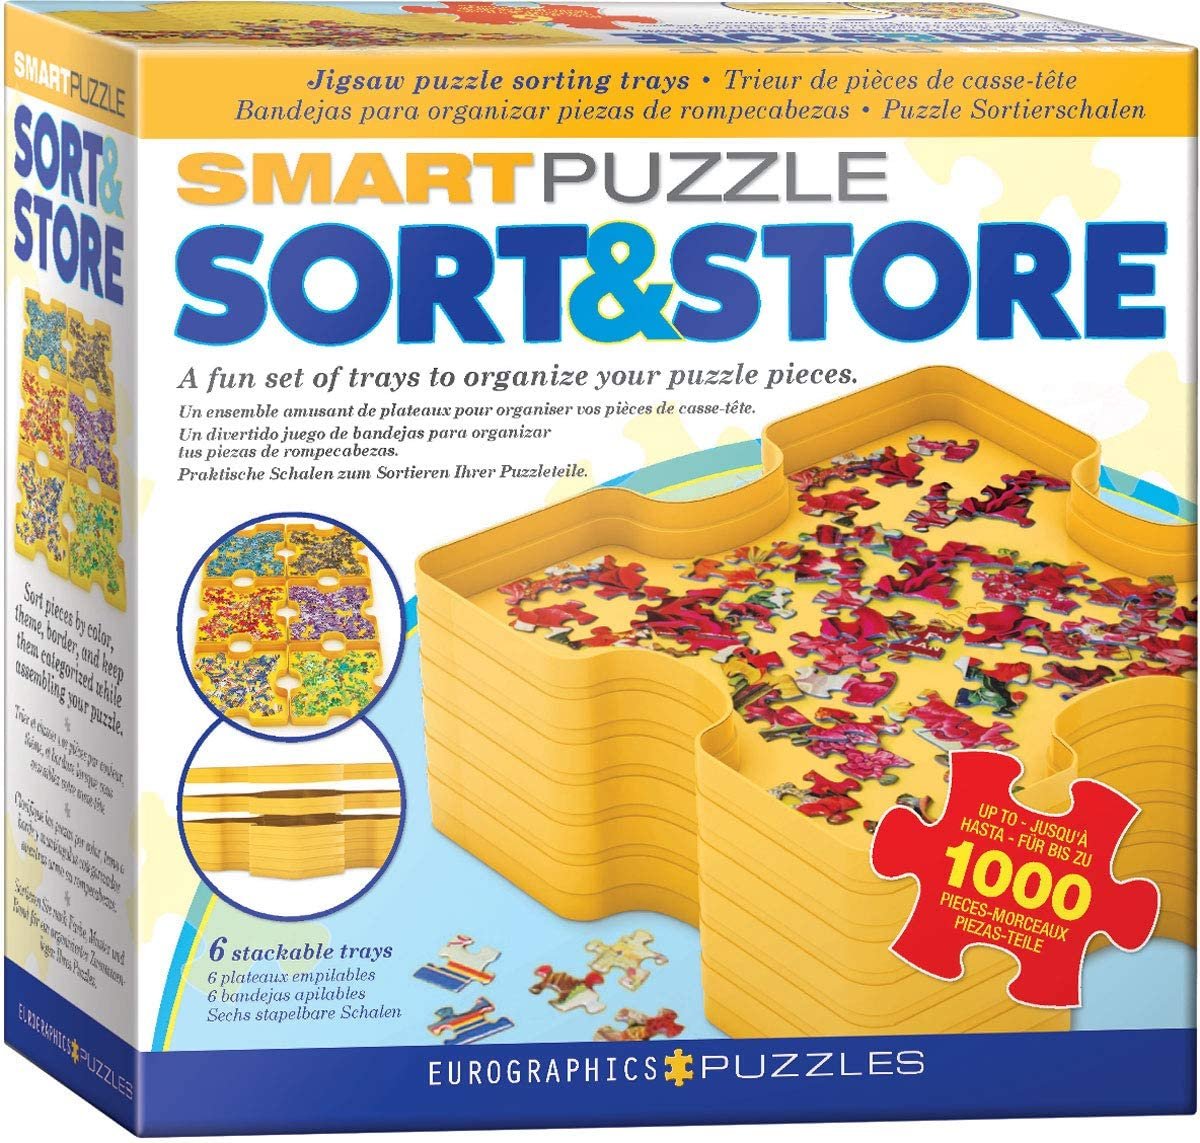 Trieur de pièces de puzzle (smart puzzle sort & store) • Librairie